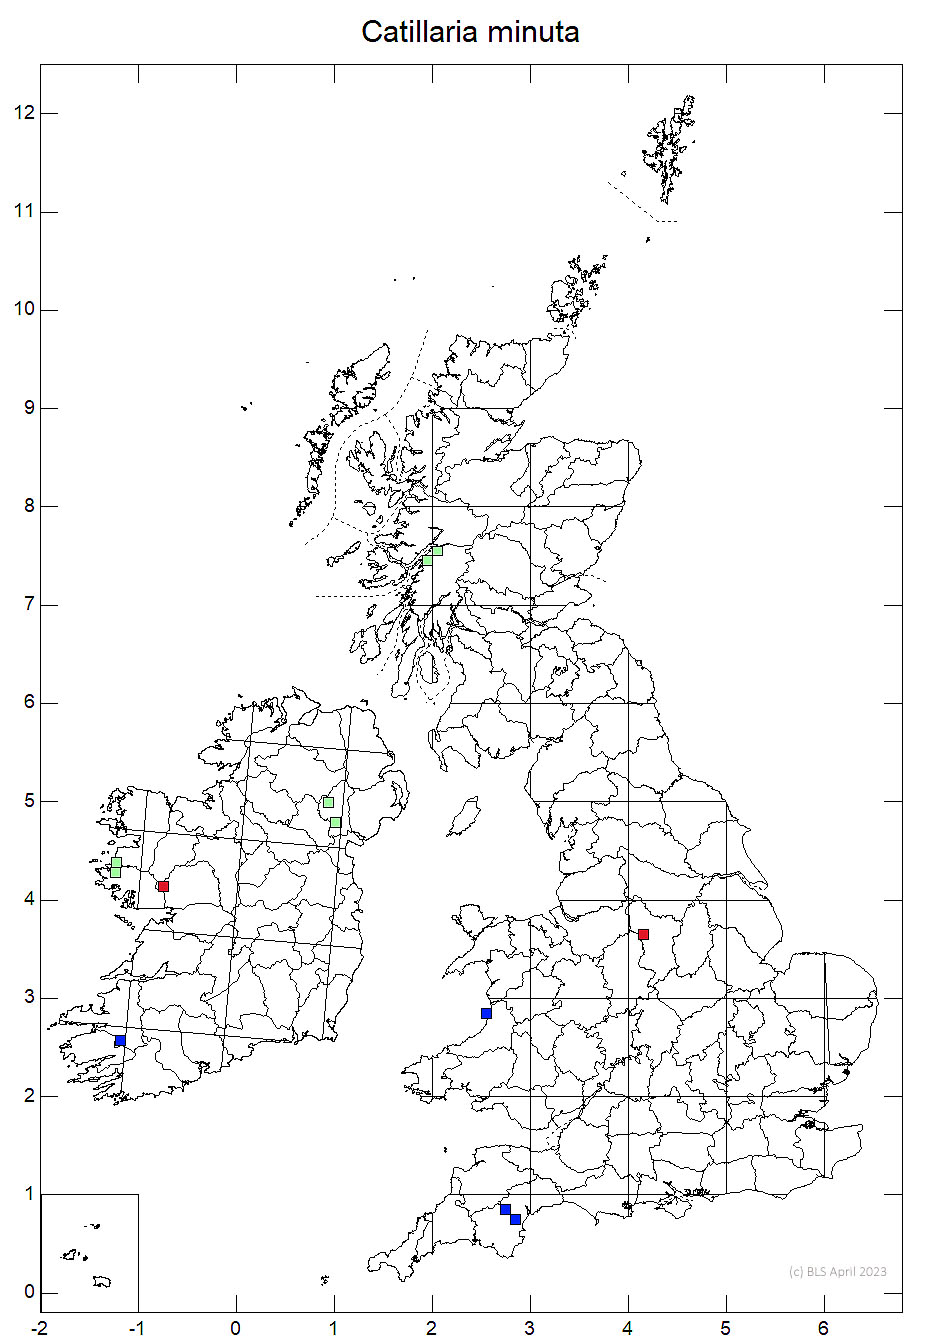 Catillaria minuta 10km sq distribution map